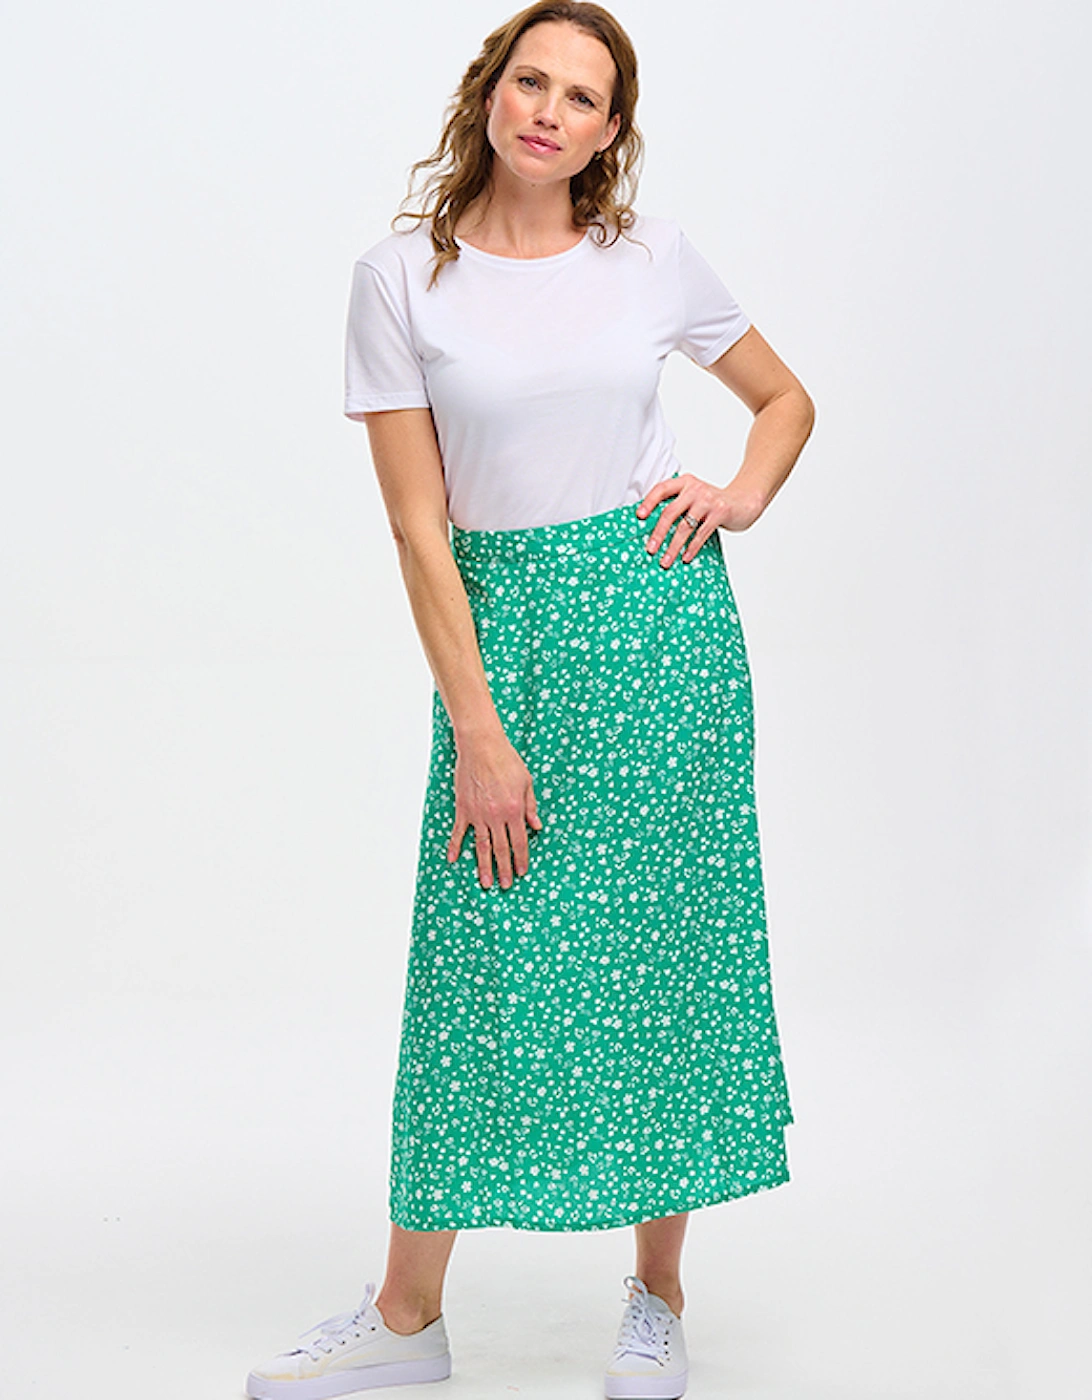 Zora Skirt Green Scatter Print, 5 of 4